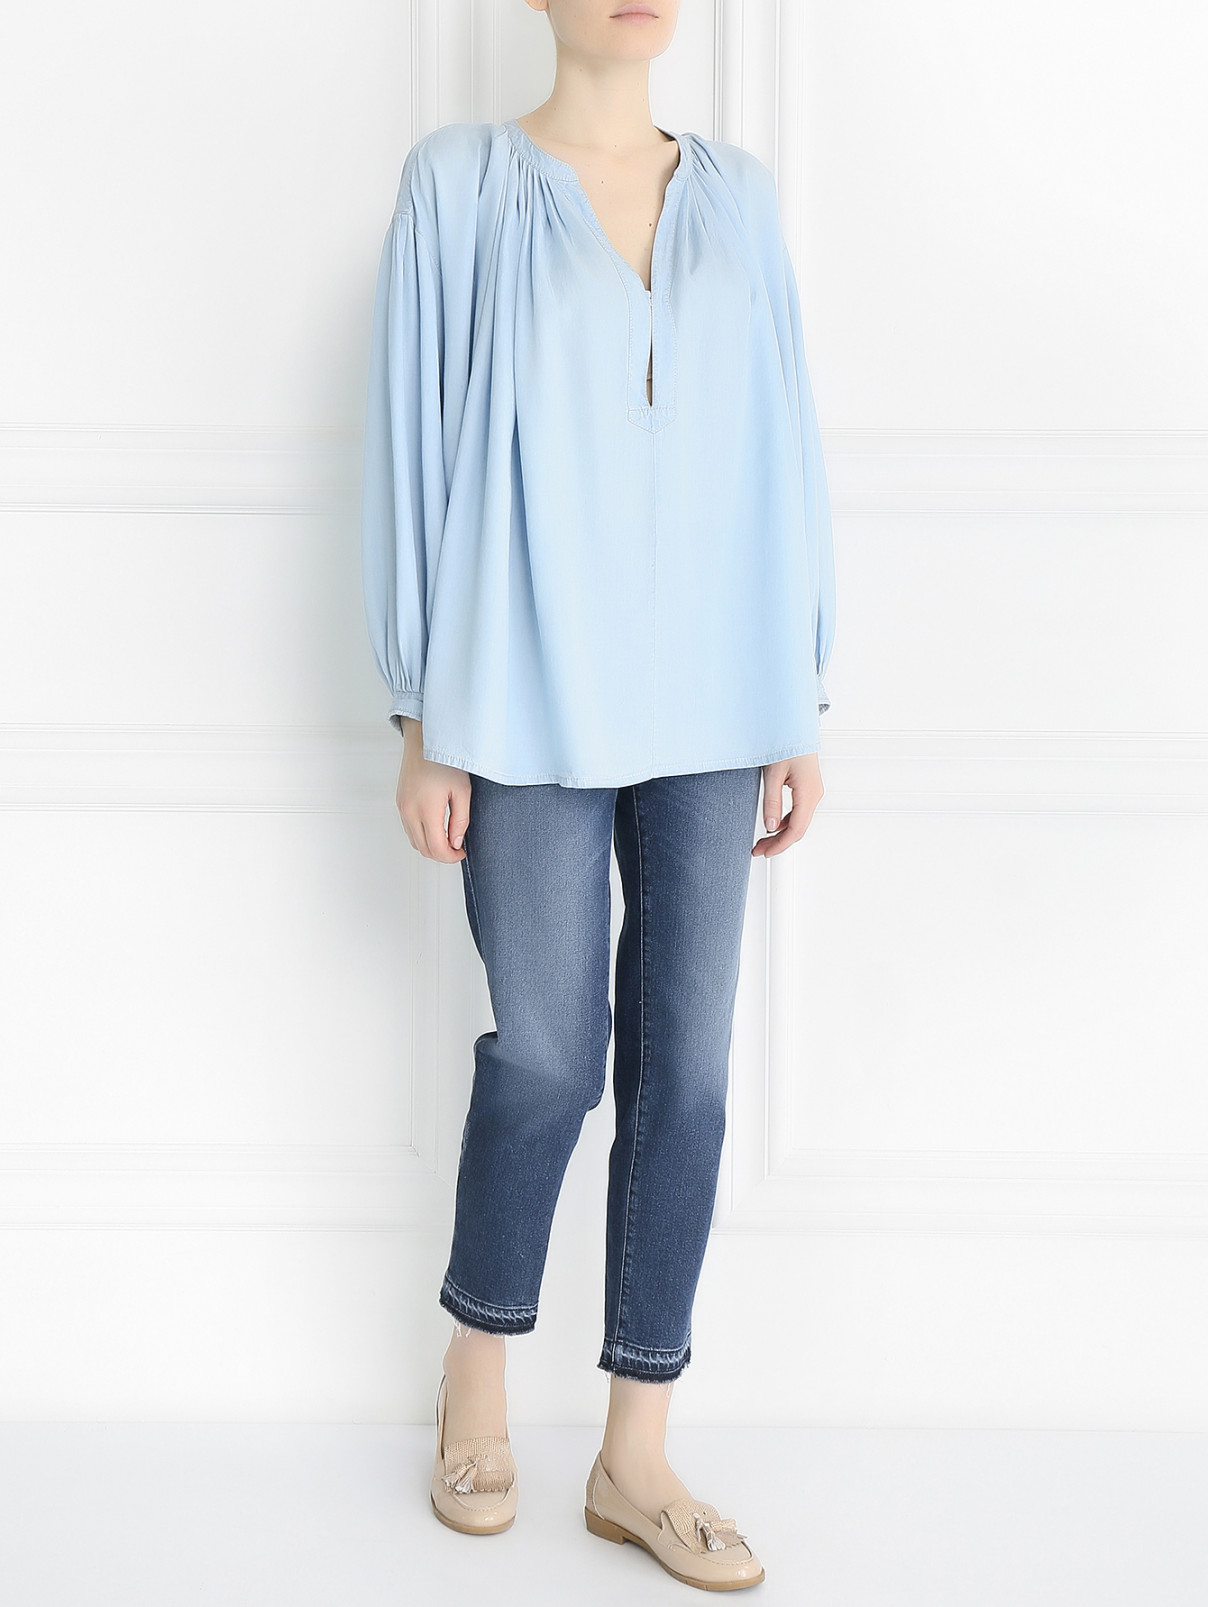 Блуза с драпировкой свободного кроя Sonia Rykiel  –  Модель Общий вид  – Цвет:  Синий